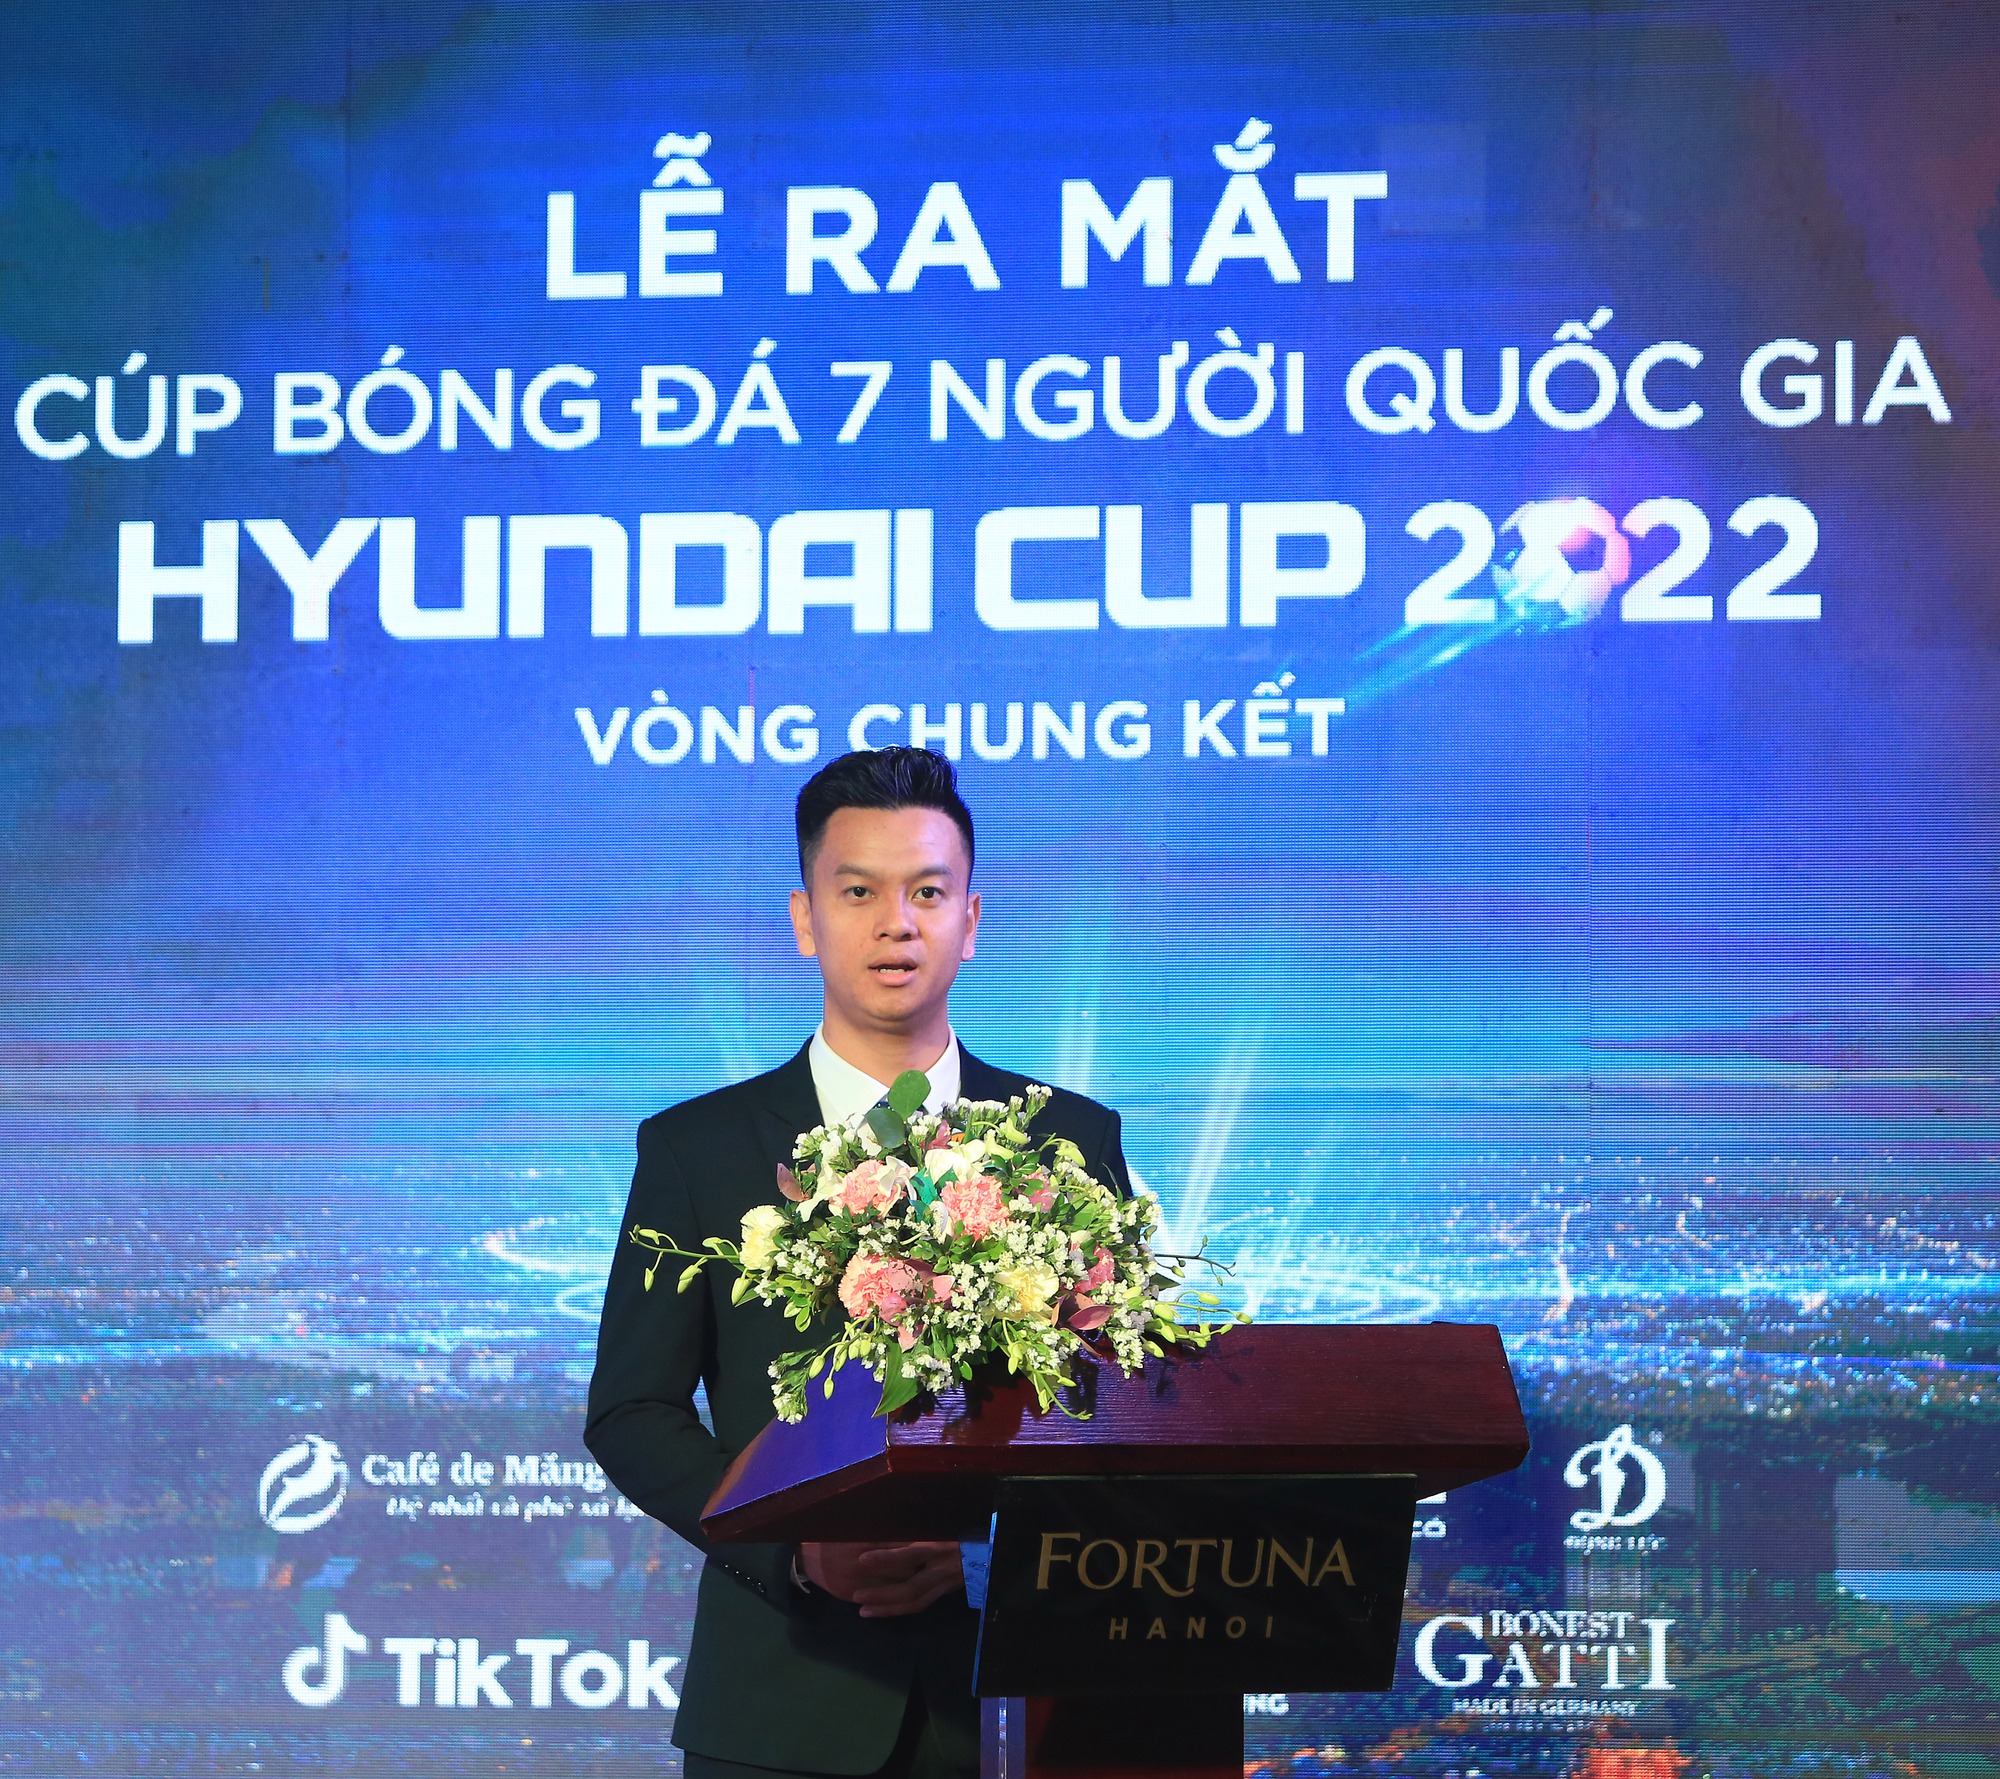 VCK Cúp bóng đá 7 người quốc gia: Chọn tuyển thủ Việt Nam so tài Thái Lan, Indonesia, Malaysia - Ảnh 4.